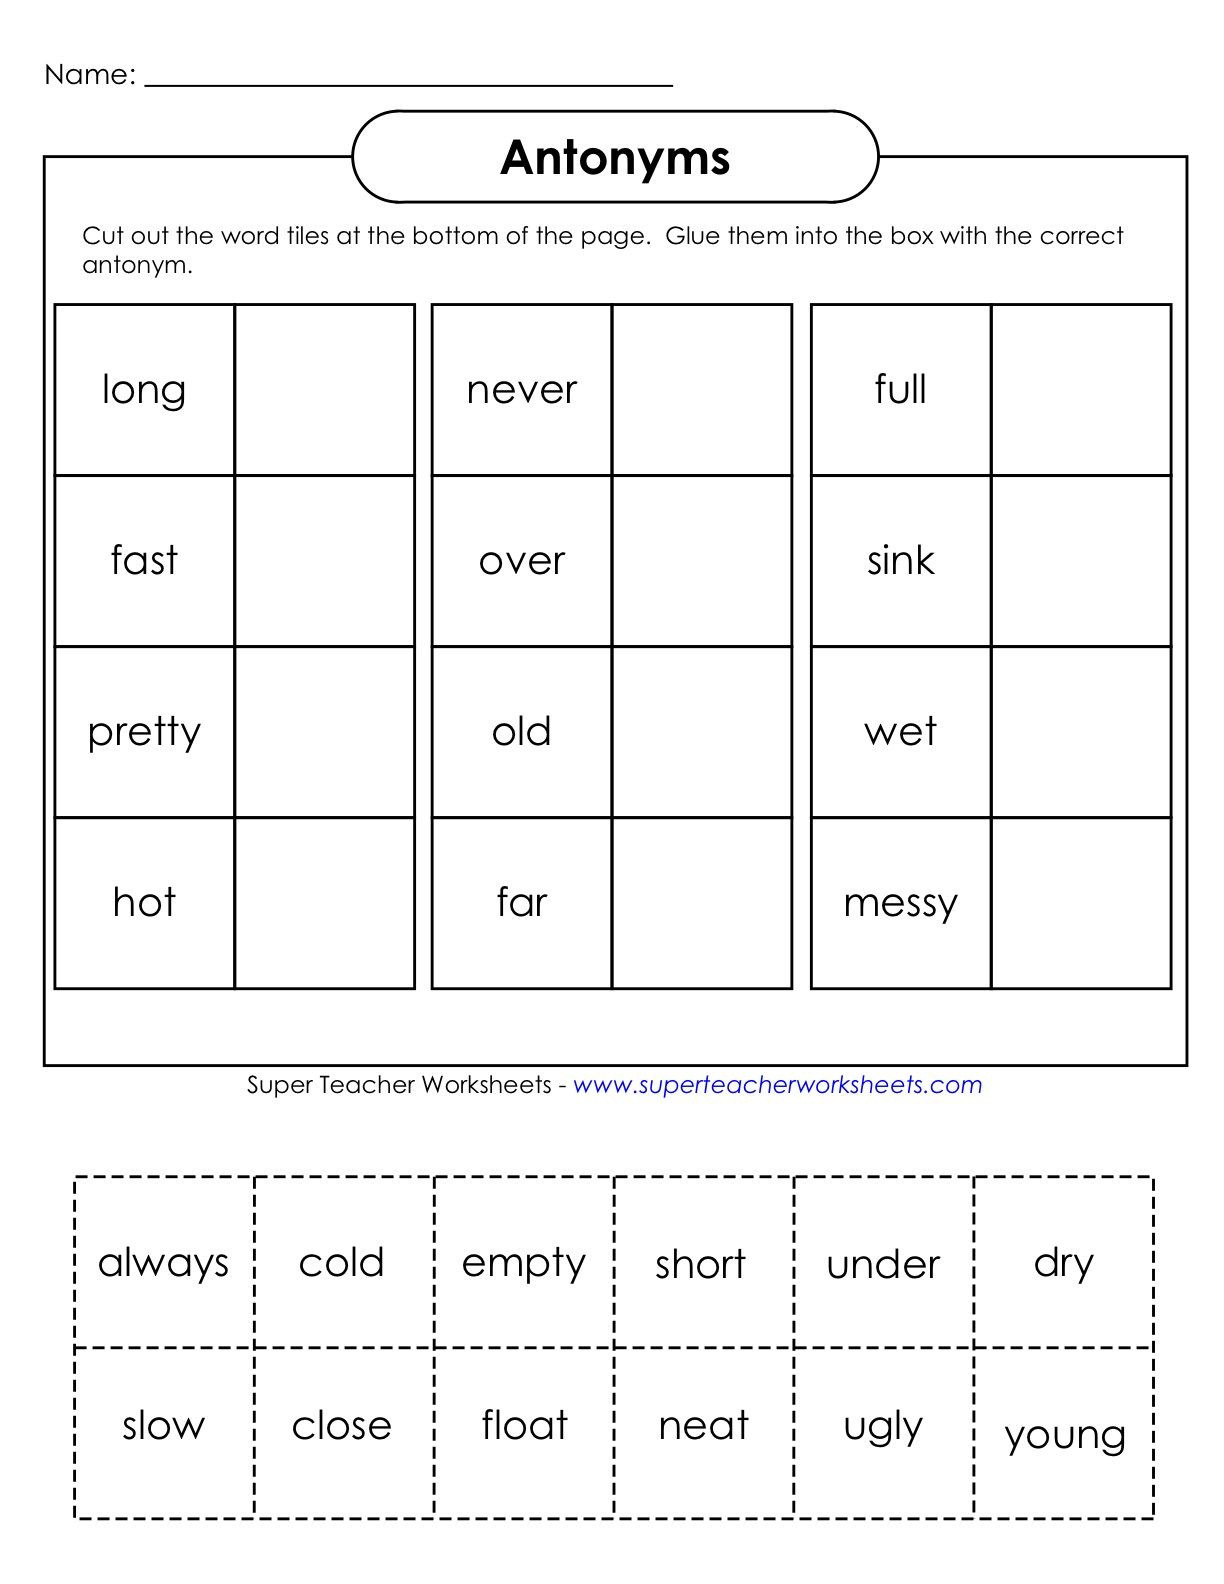 Antonyms Worksheets 3rd Grade Education Antonyms Worksheet